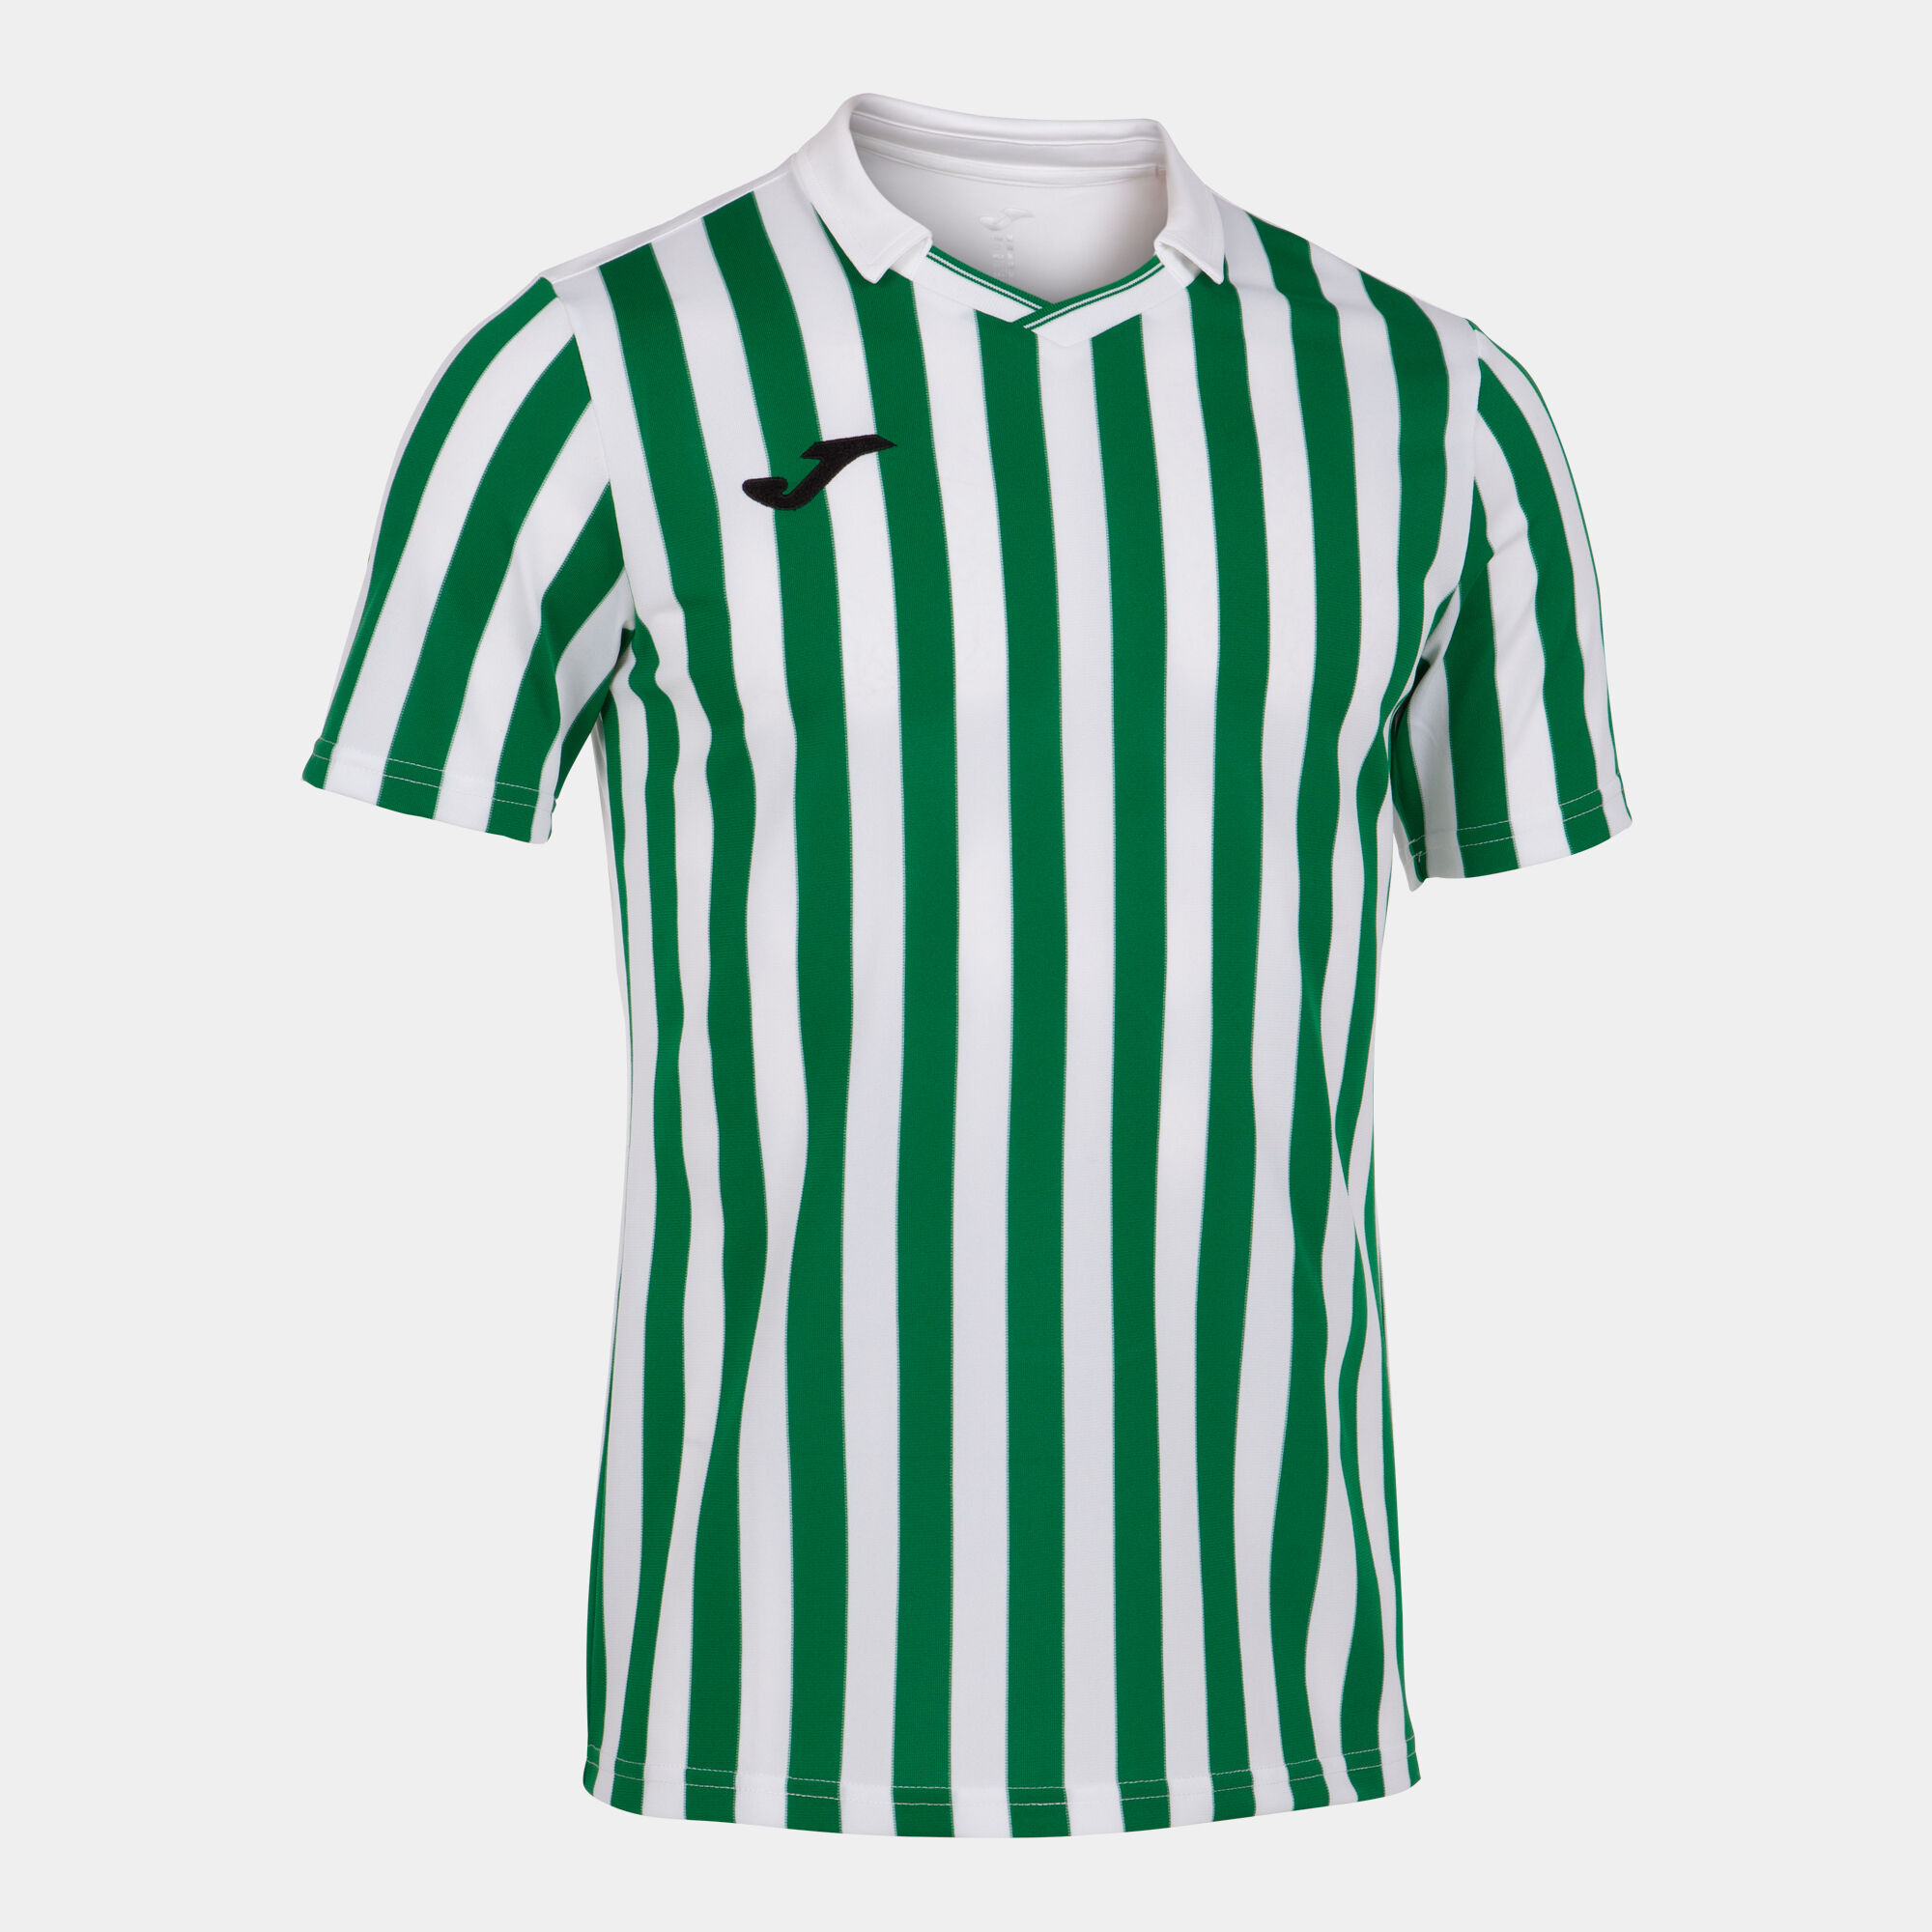 Koszulka z krótkim rękawem mężczyźni Copa II bialy zielony